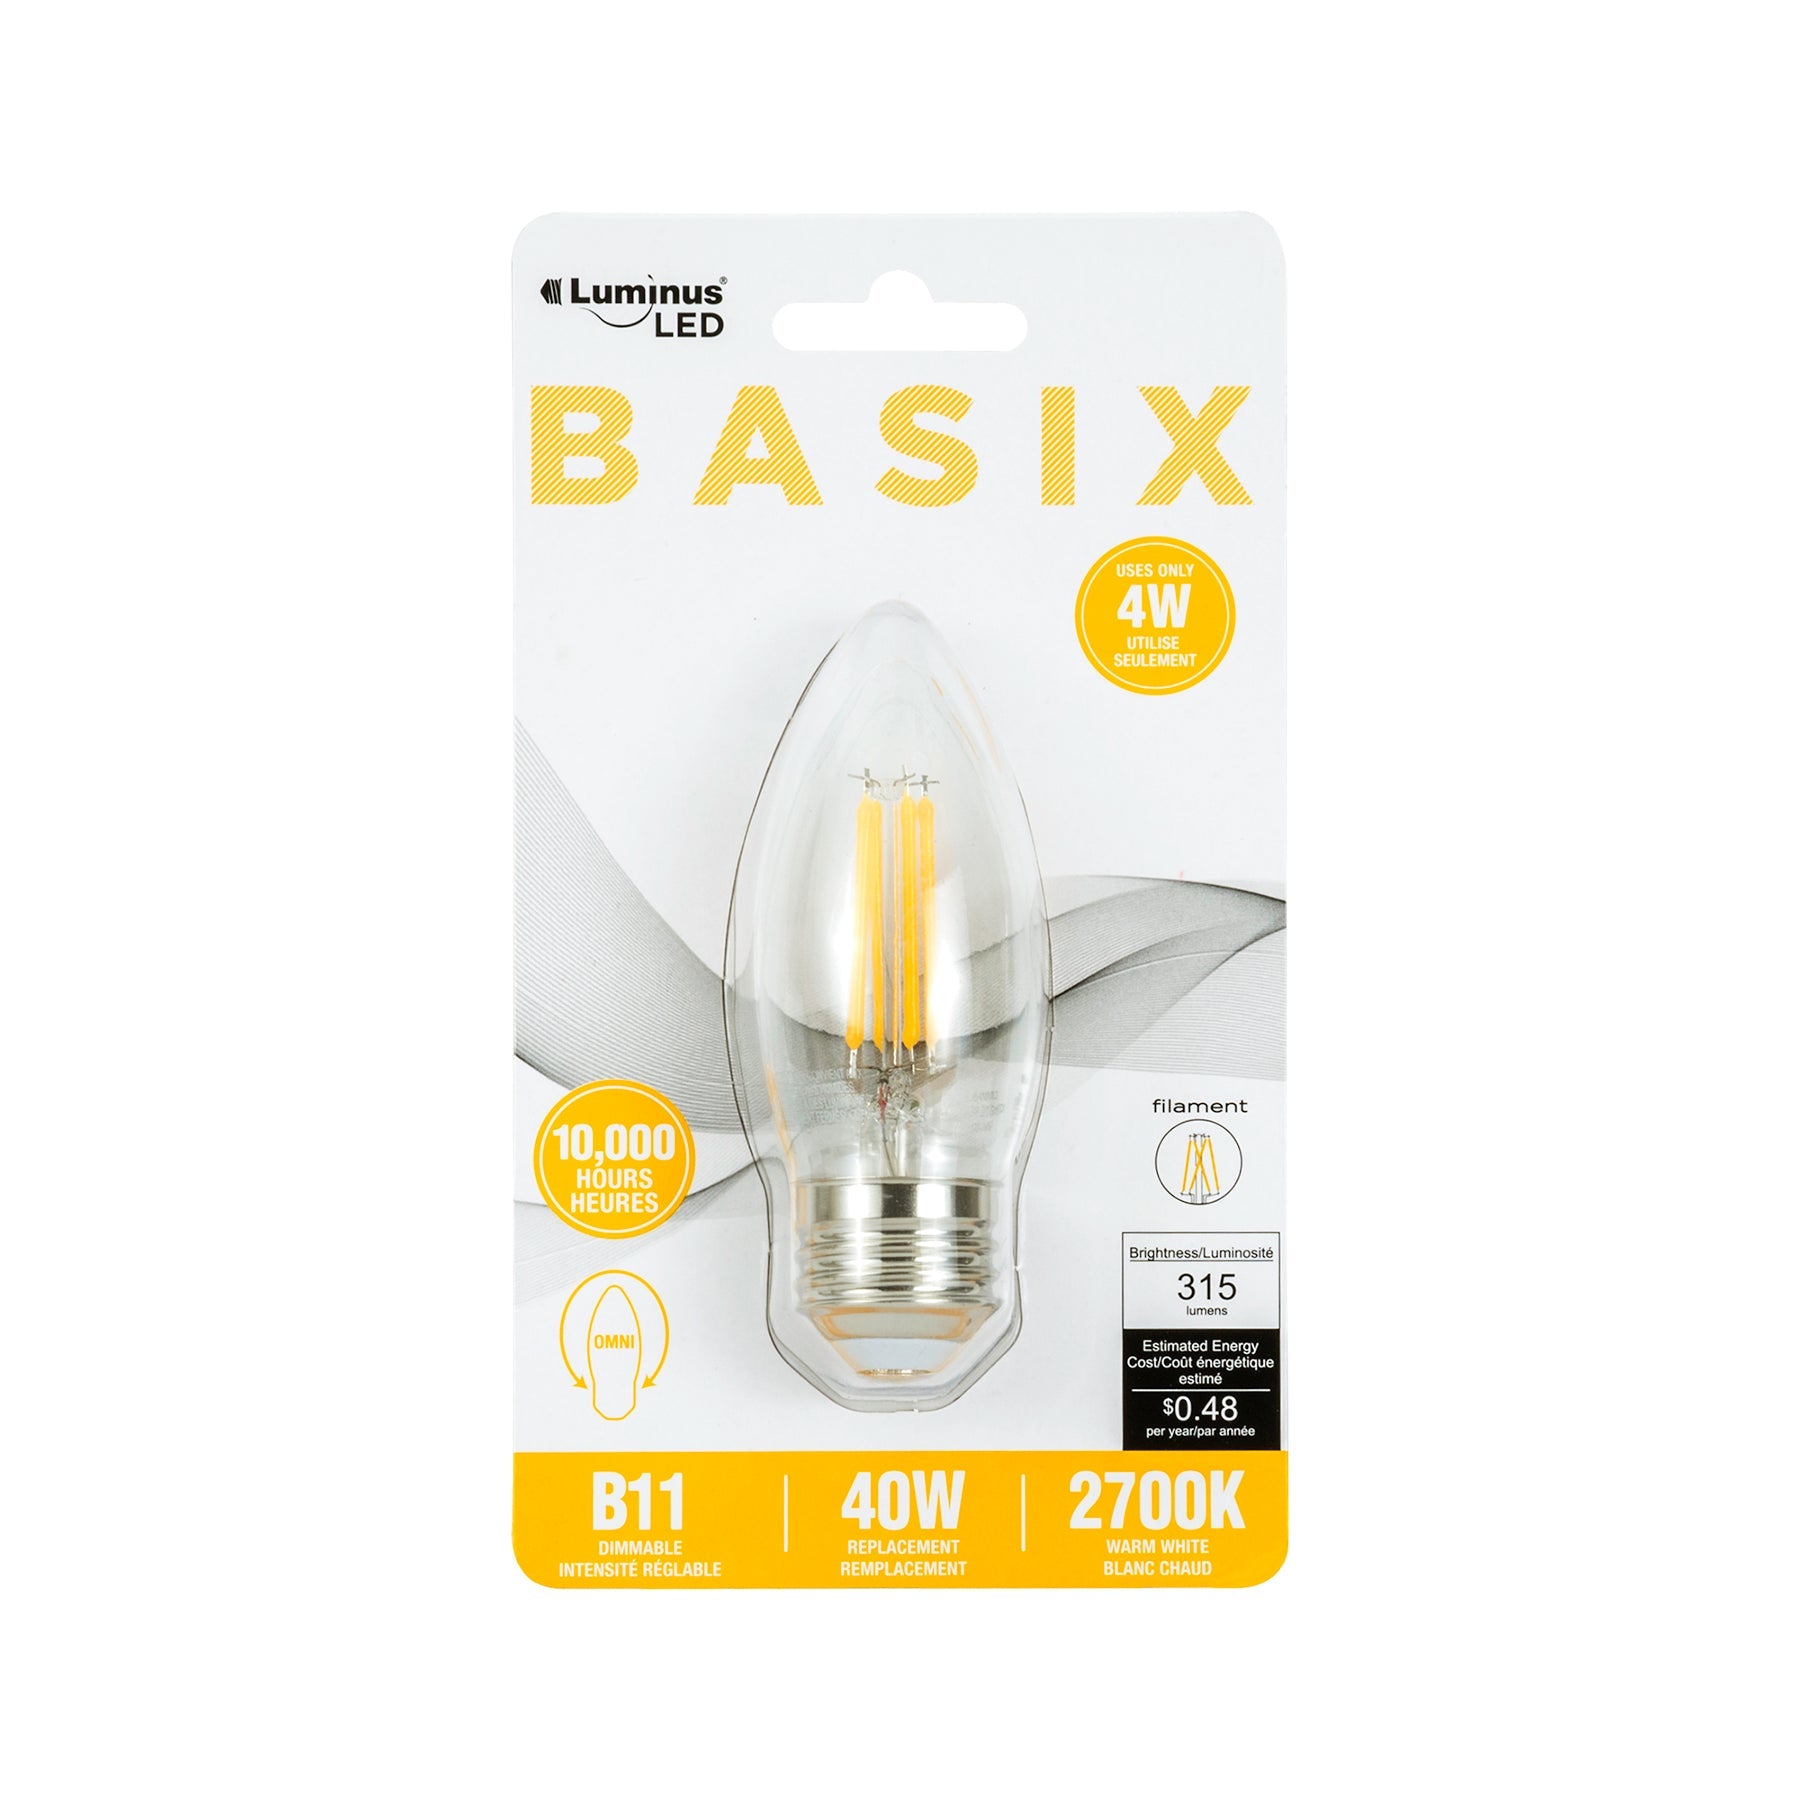 Luminus Led Basix Filament Light Bulb Warm White Base E26 B10 2700K 1.38x3.62in